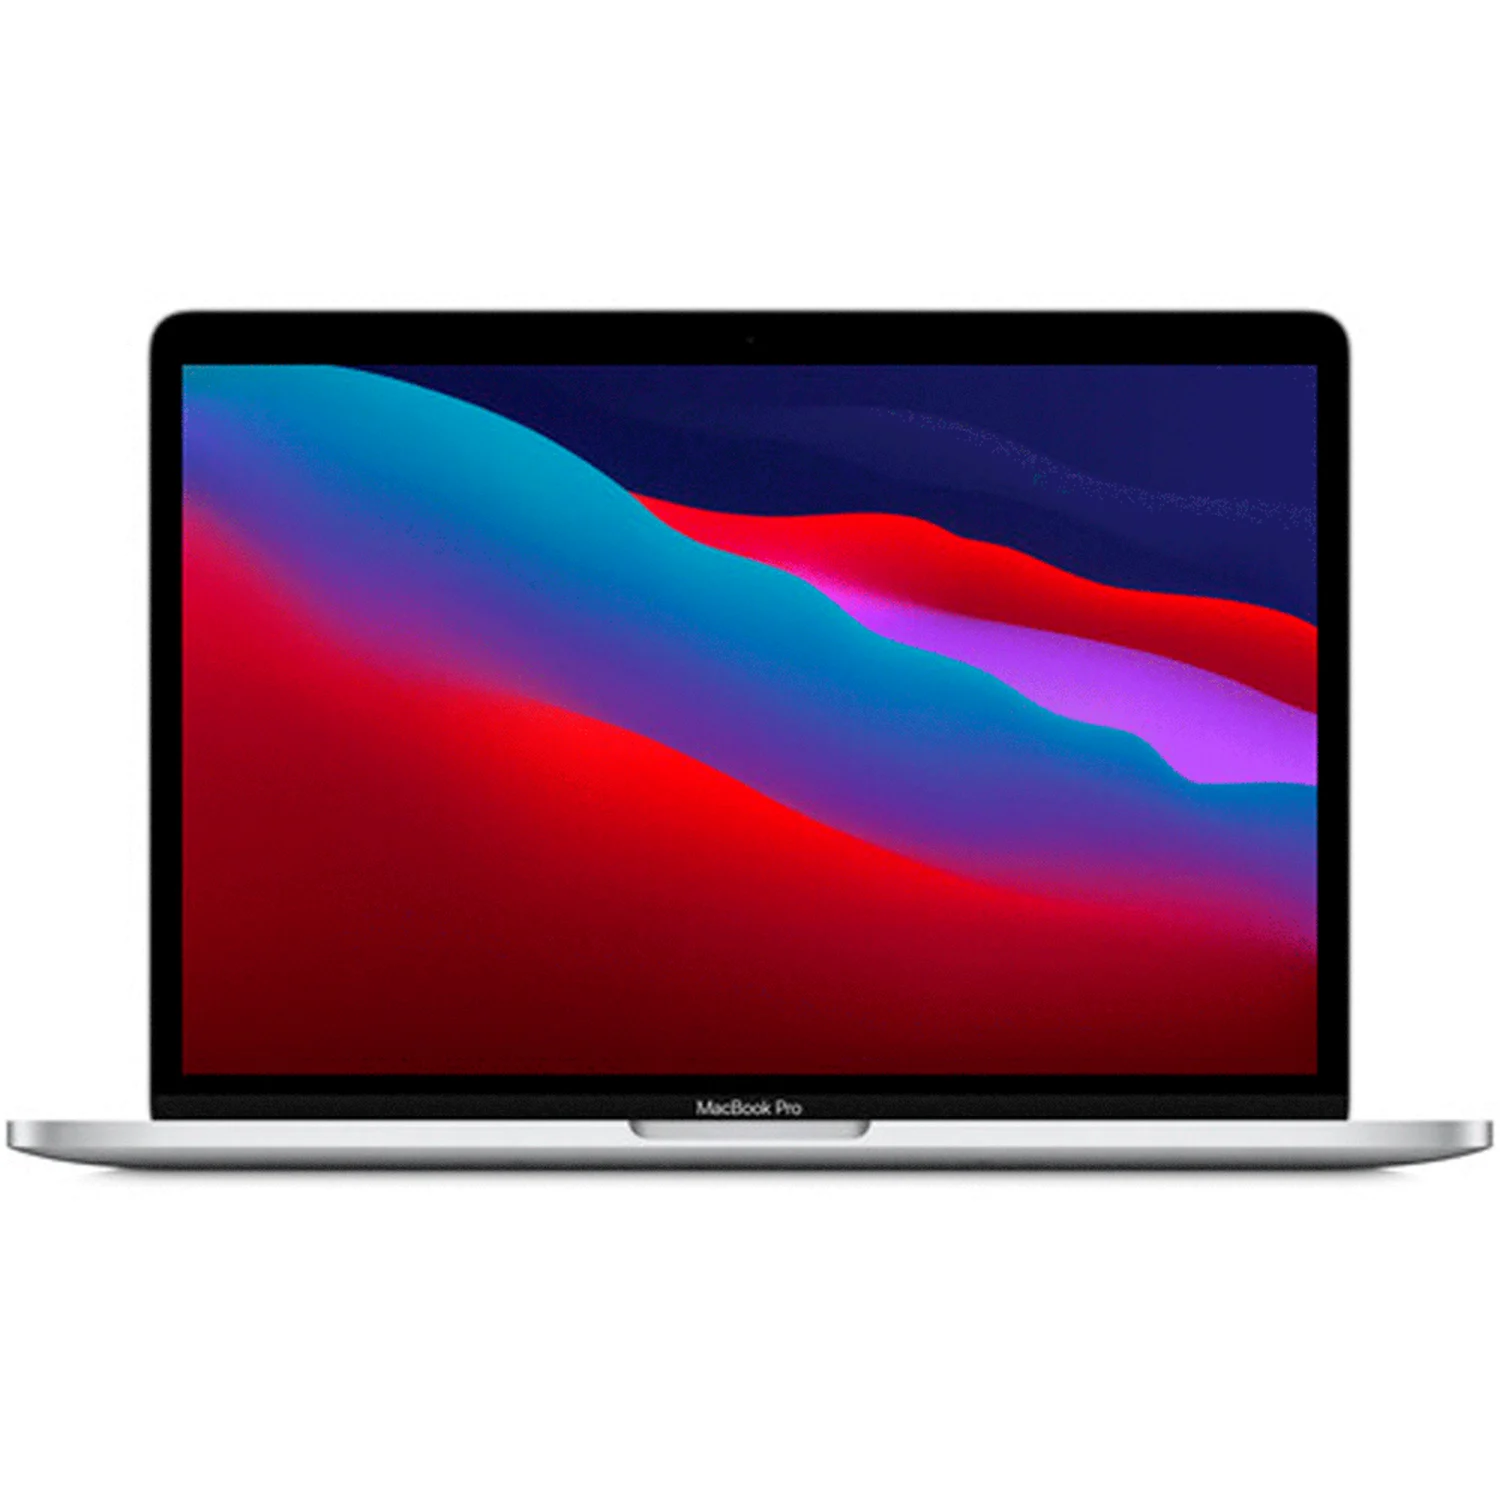 Apple Macbook Pro MYDC2LL/A M1 / Memória RAM 8GB / SSD 512GB / Tela 13.3" - Silver (2020)